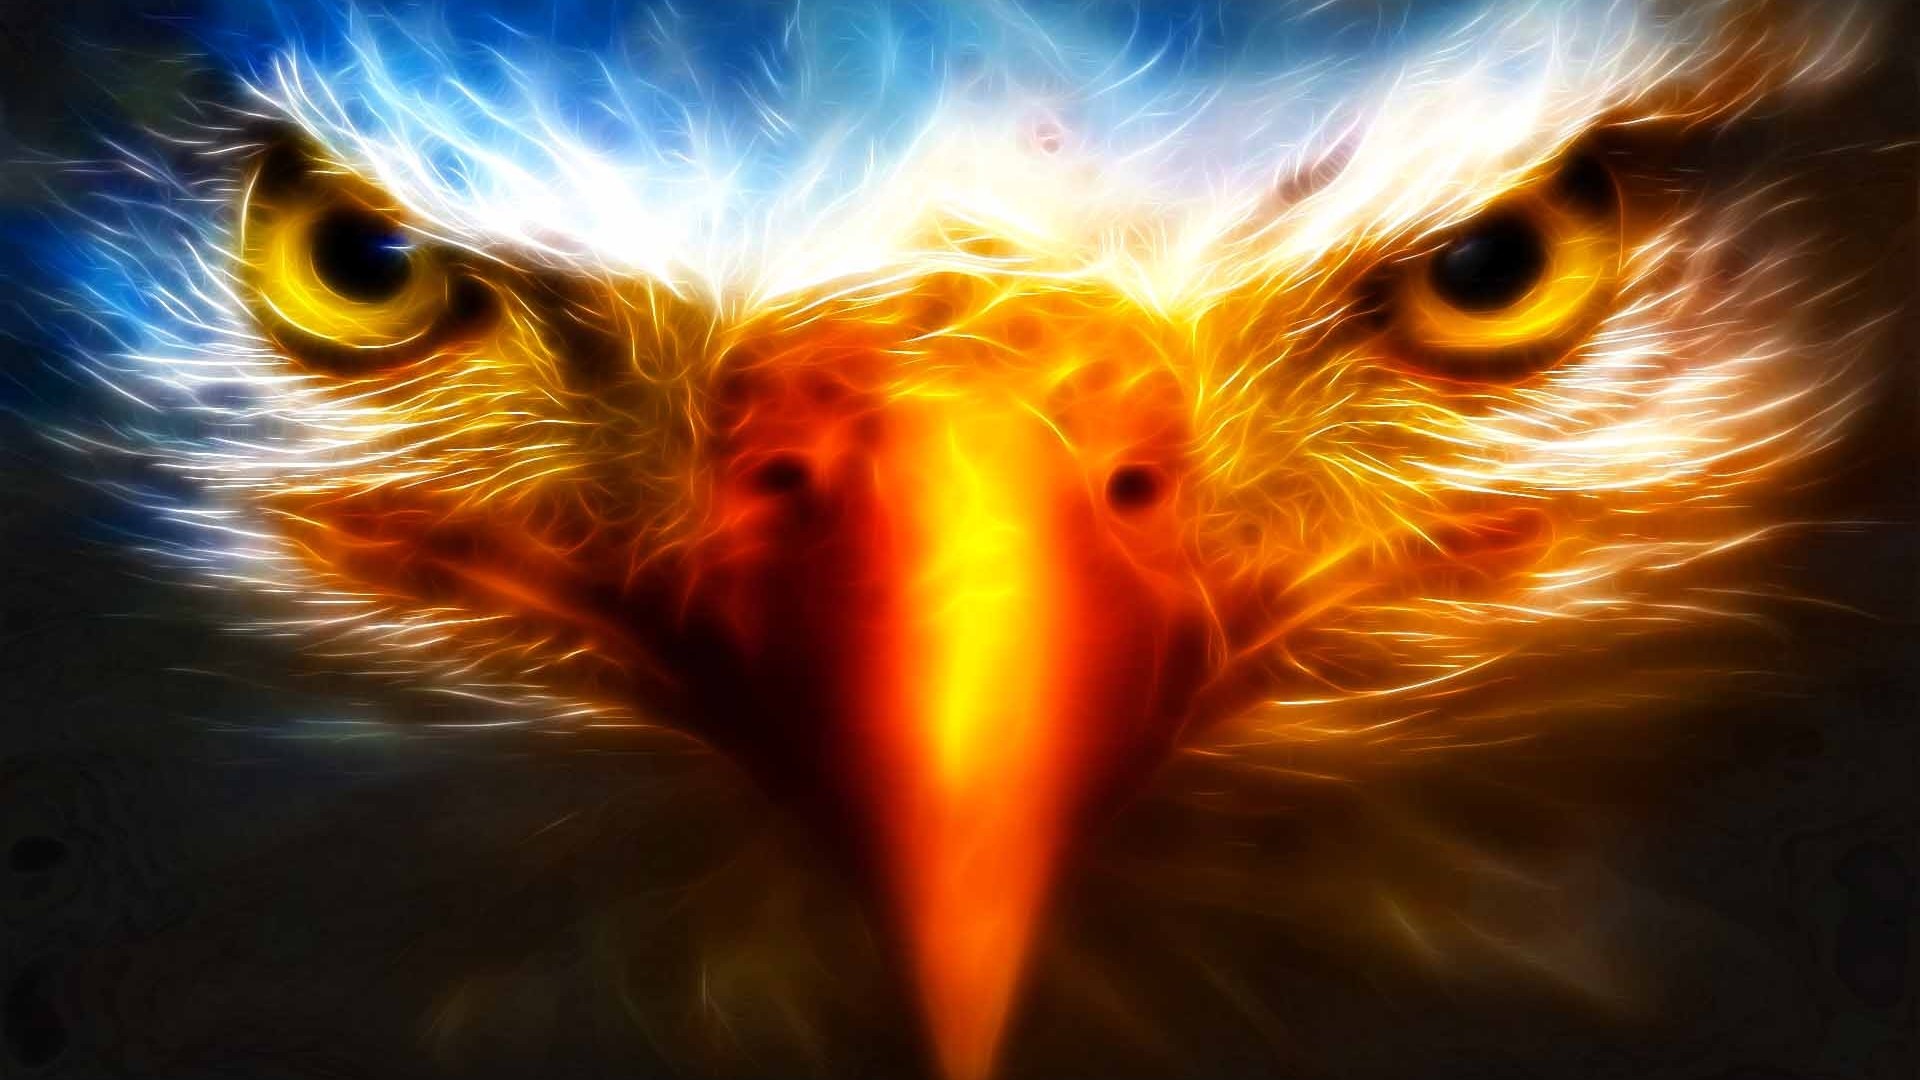 Eagle 3d cool hd desktop background